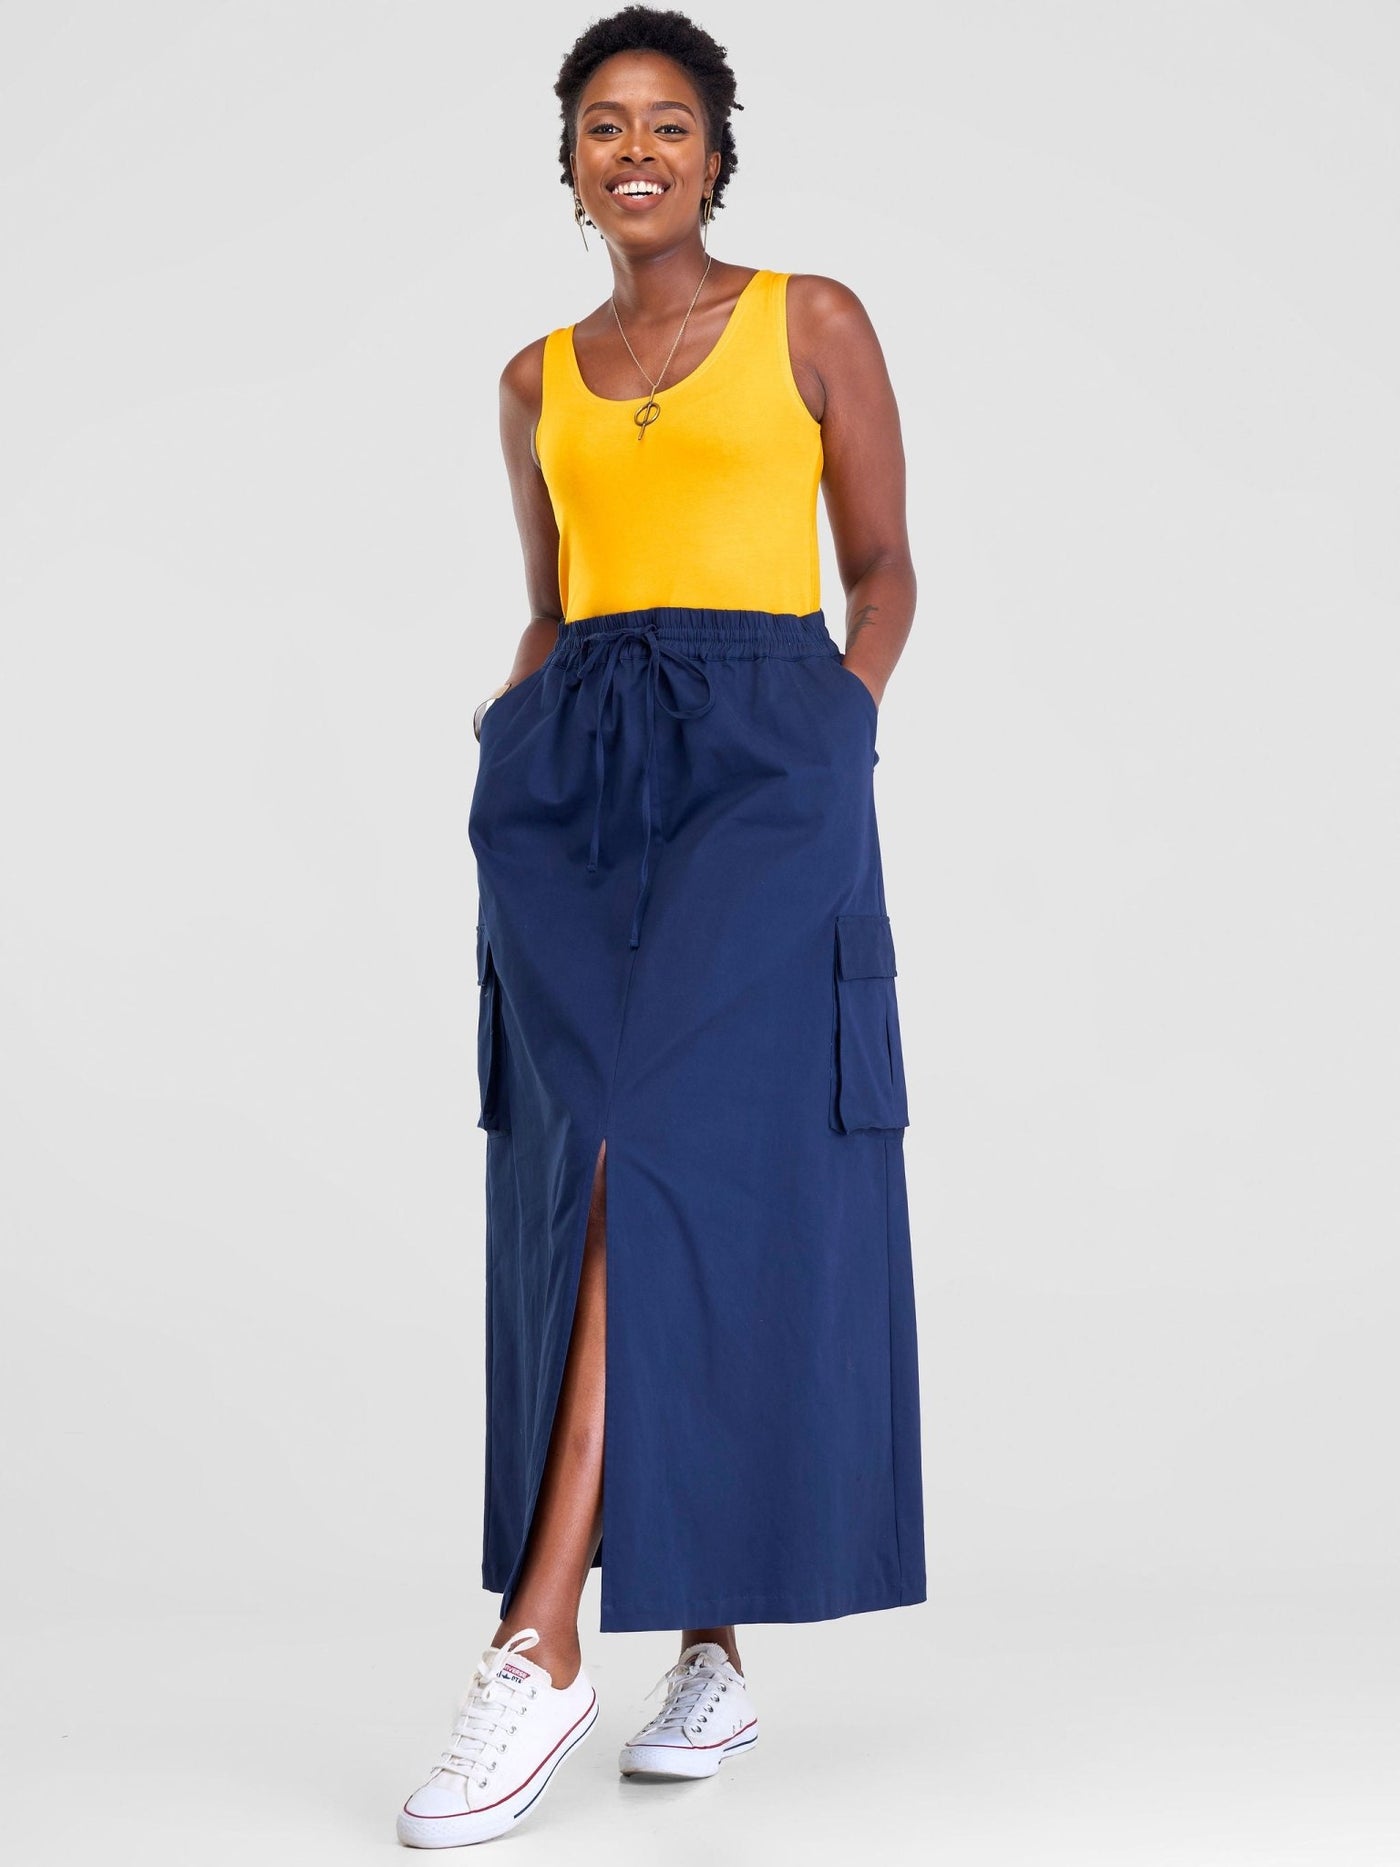 Safari Lira Front Slit Maxi Skirt - Navy Blue - Shopzetu